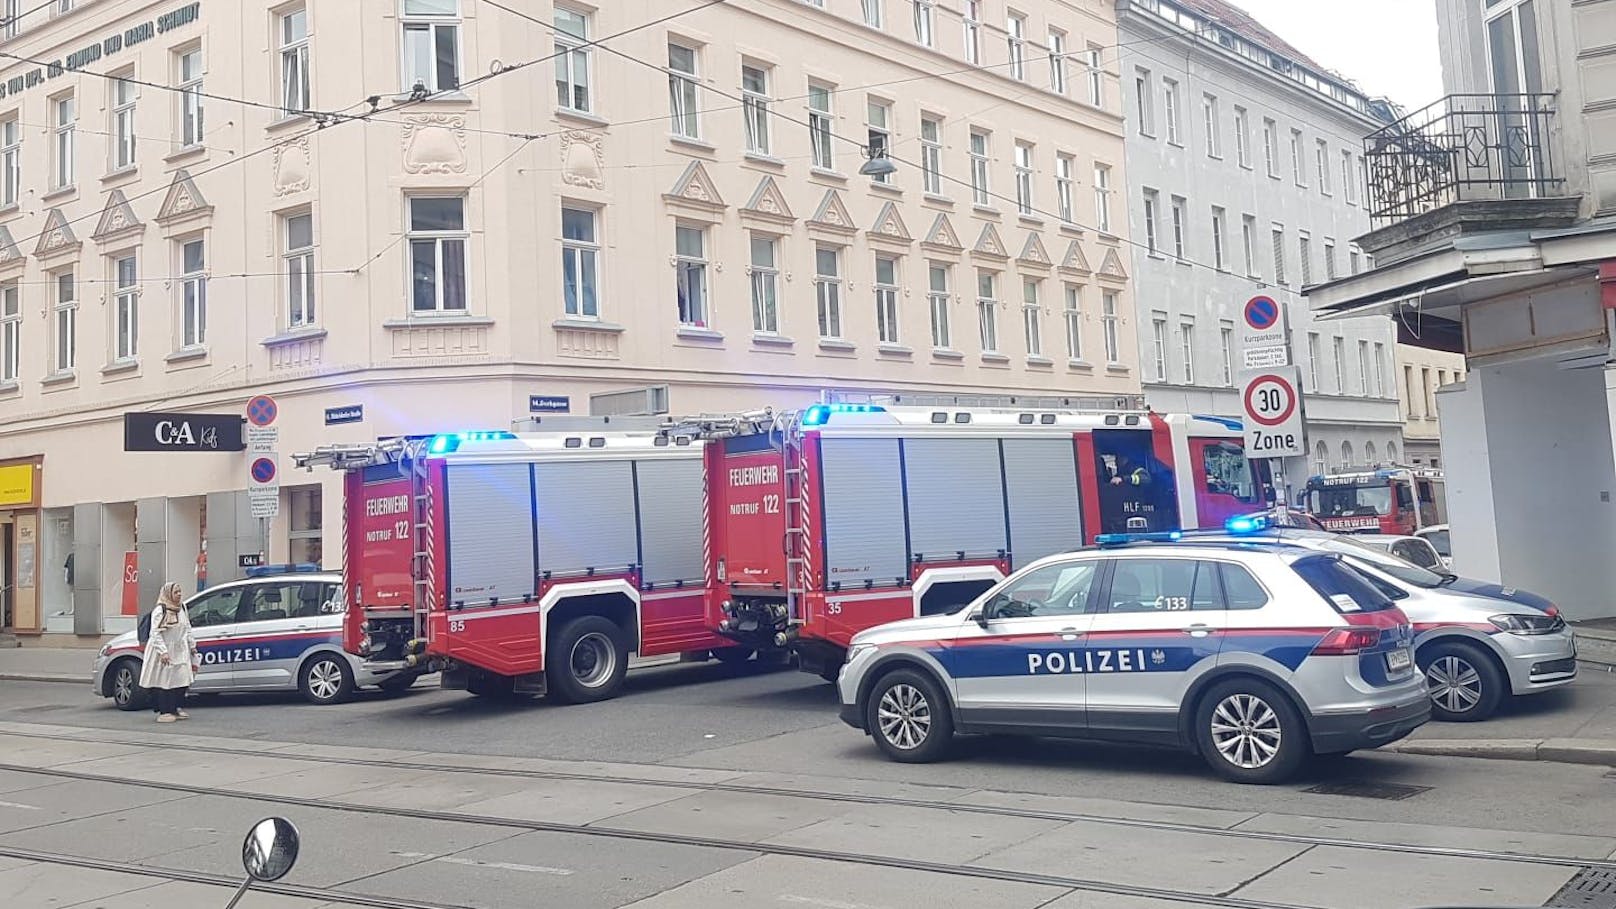 Feuerwehreinsatz am Montagmorgen in der Gurkgasse (Wien-Penzing)